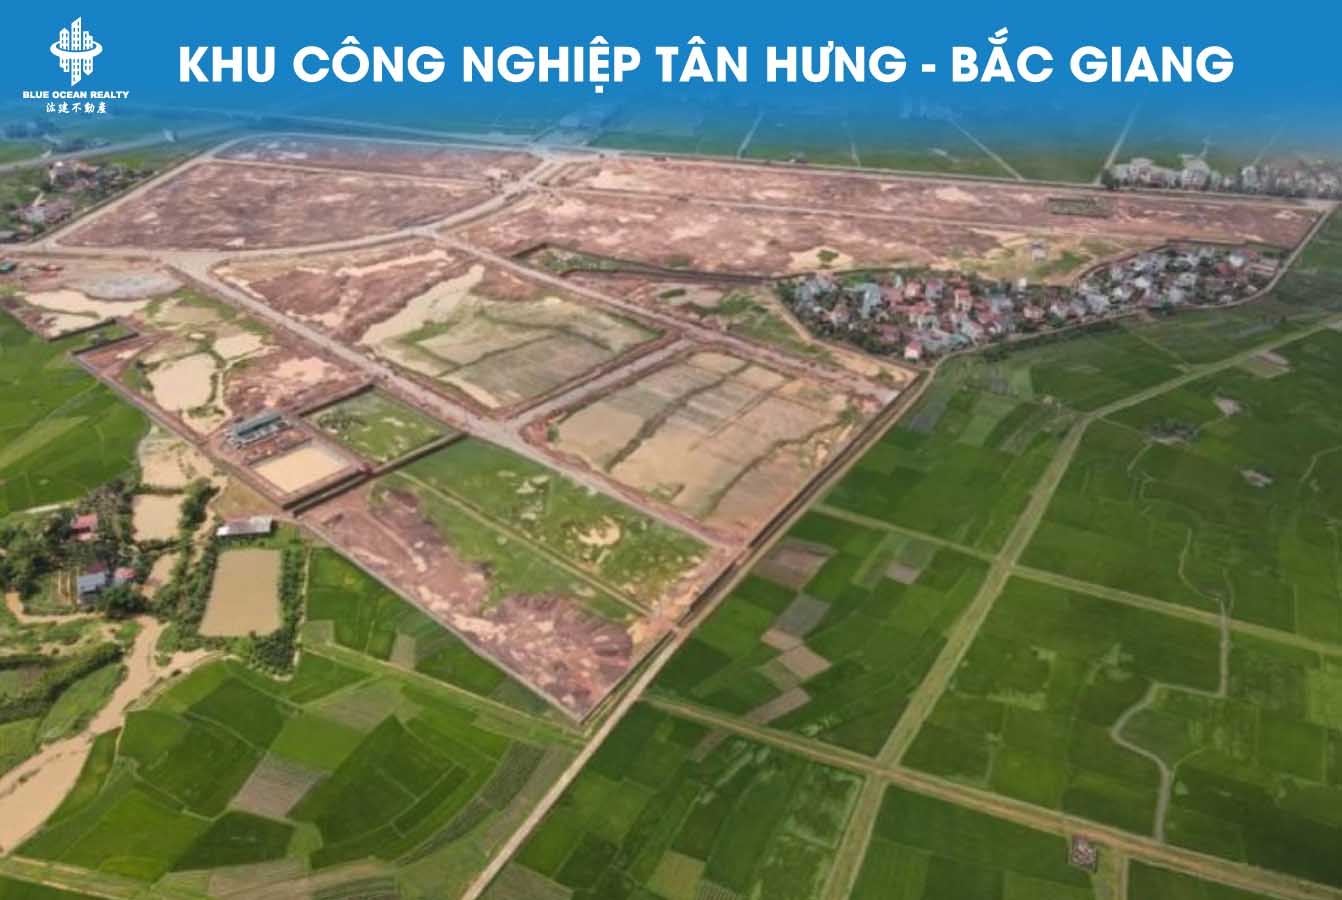 Khu công nghiệp (KCN) Tân Hưng - Bắc Giang